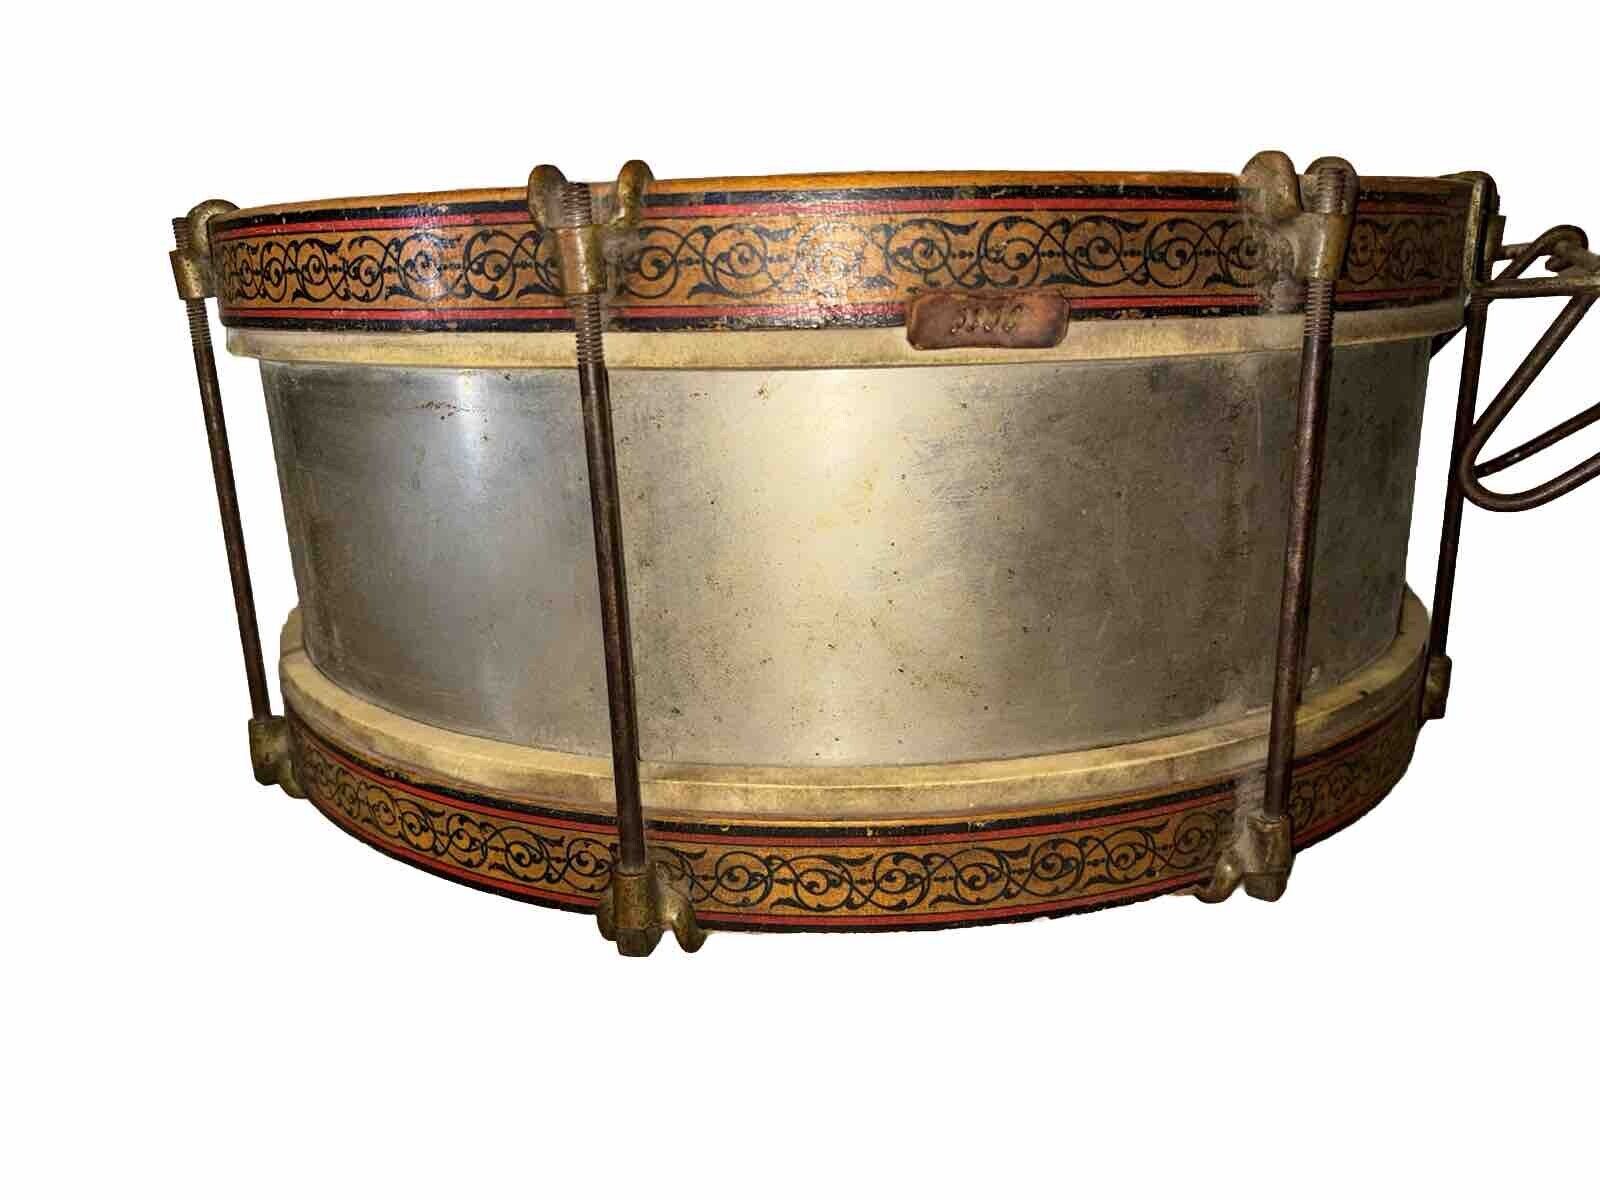 Antique Vintage Wood Metal Snare Drum